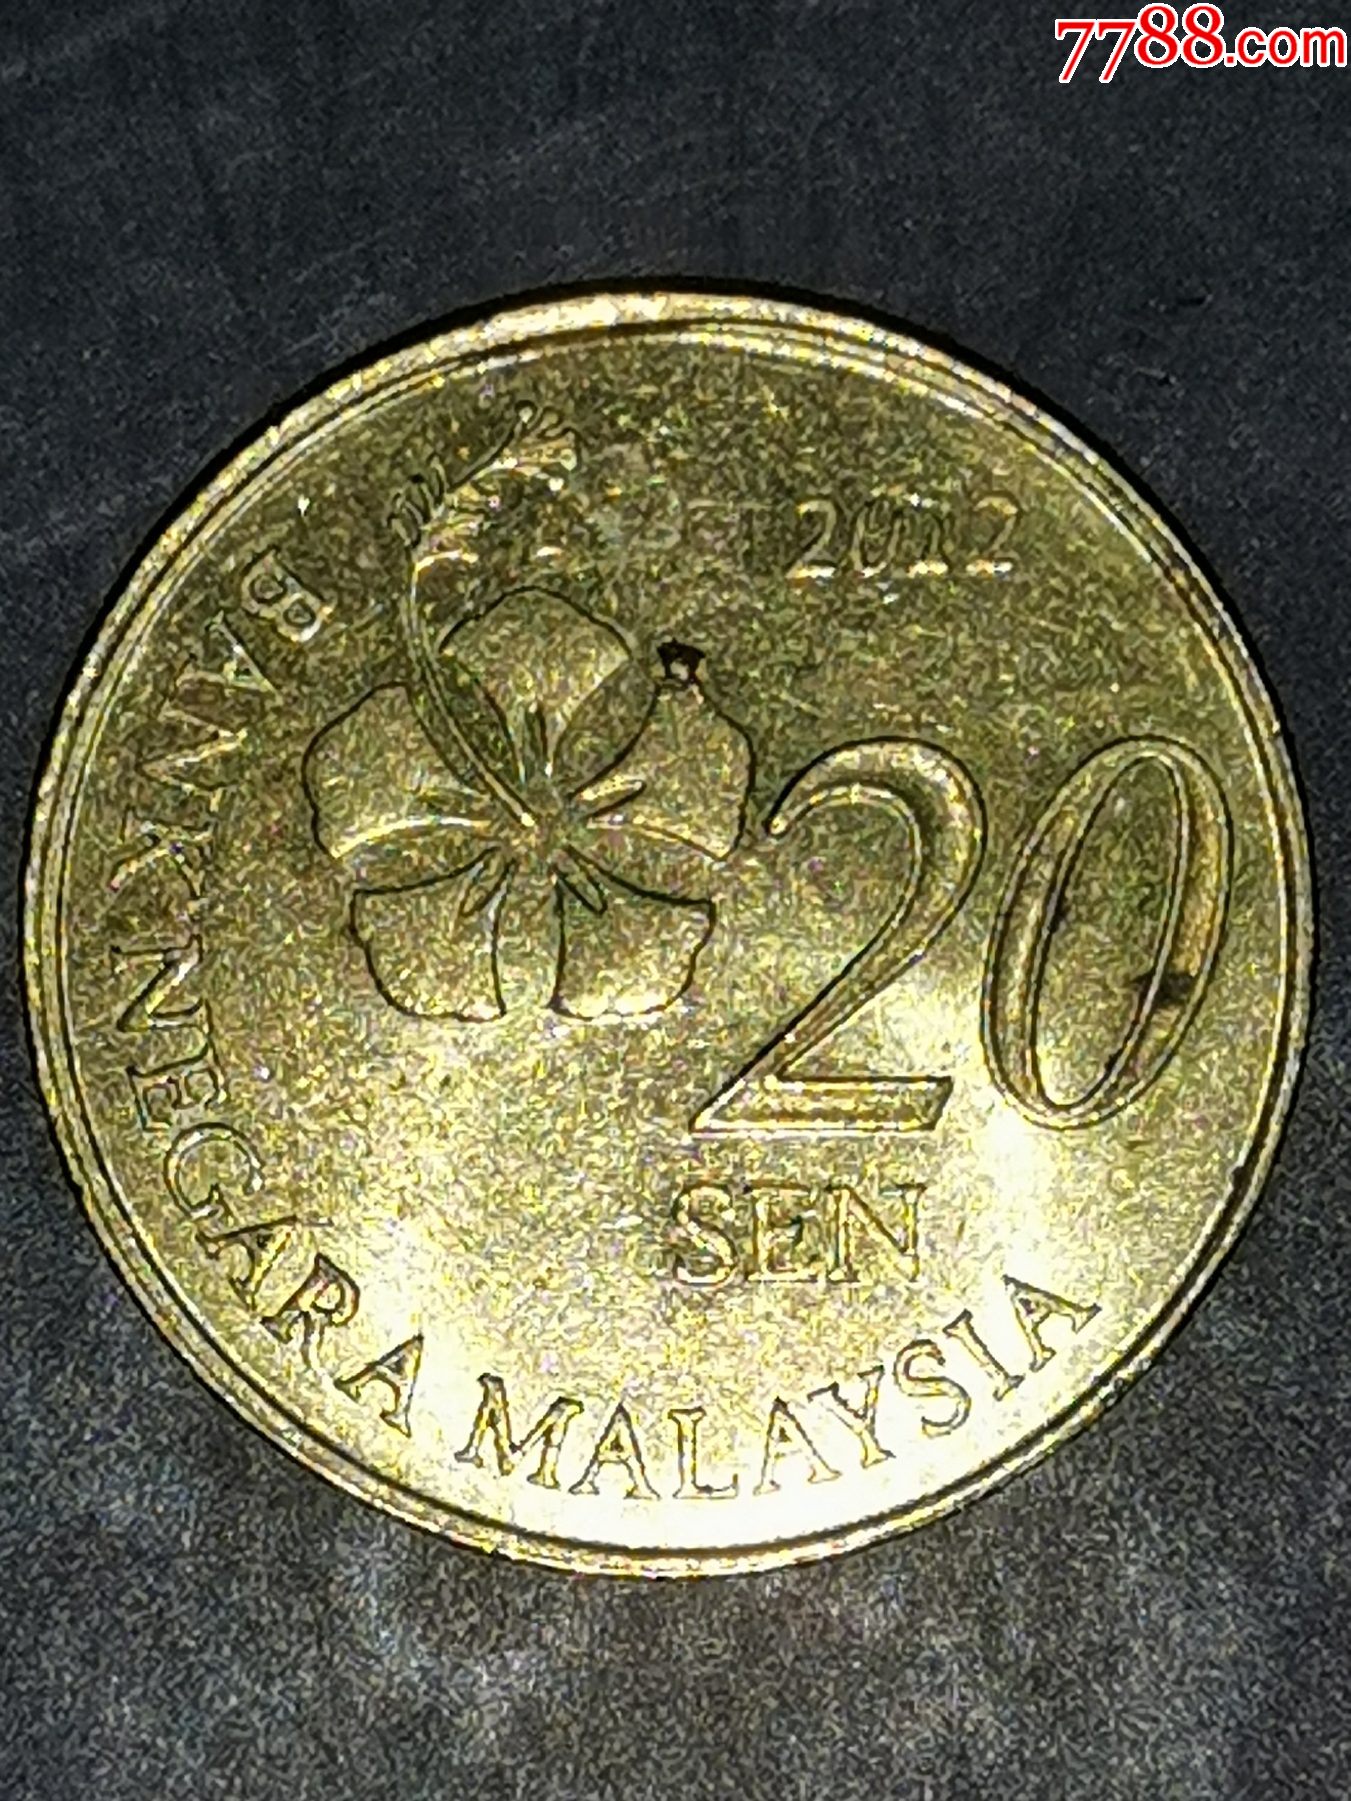 马来西亚硬币面值图片